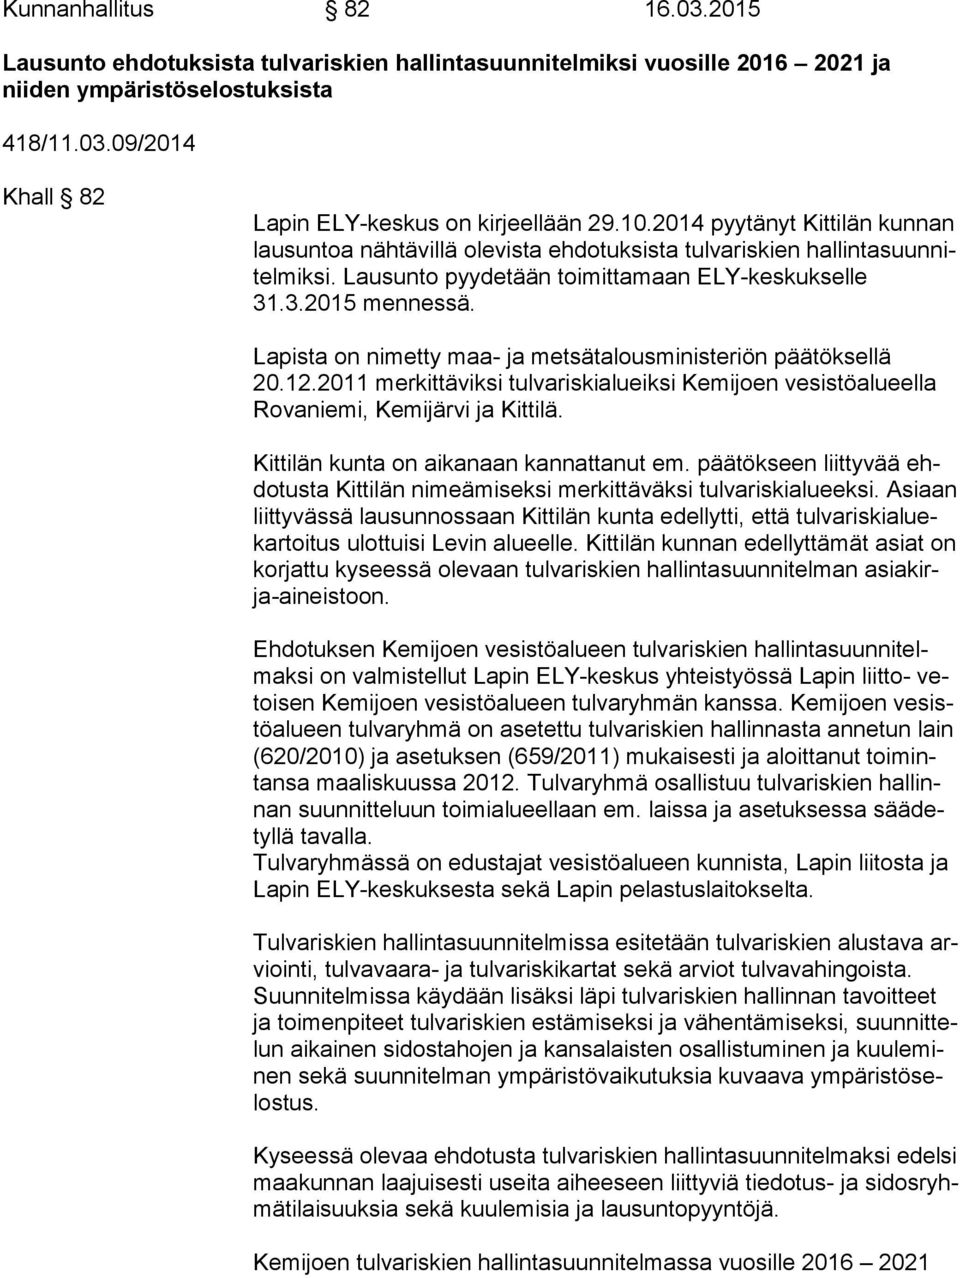 Lapista on nimetty maa- ja metsätalousministeriön päätöksellä 20.12.2011 merkittäviksi tulvariskialueiksi Kemijoen vesistöalueella Ro va nie mi, Kemijärvi ja Kittilä.